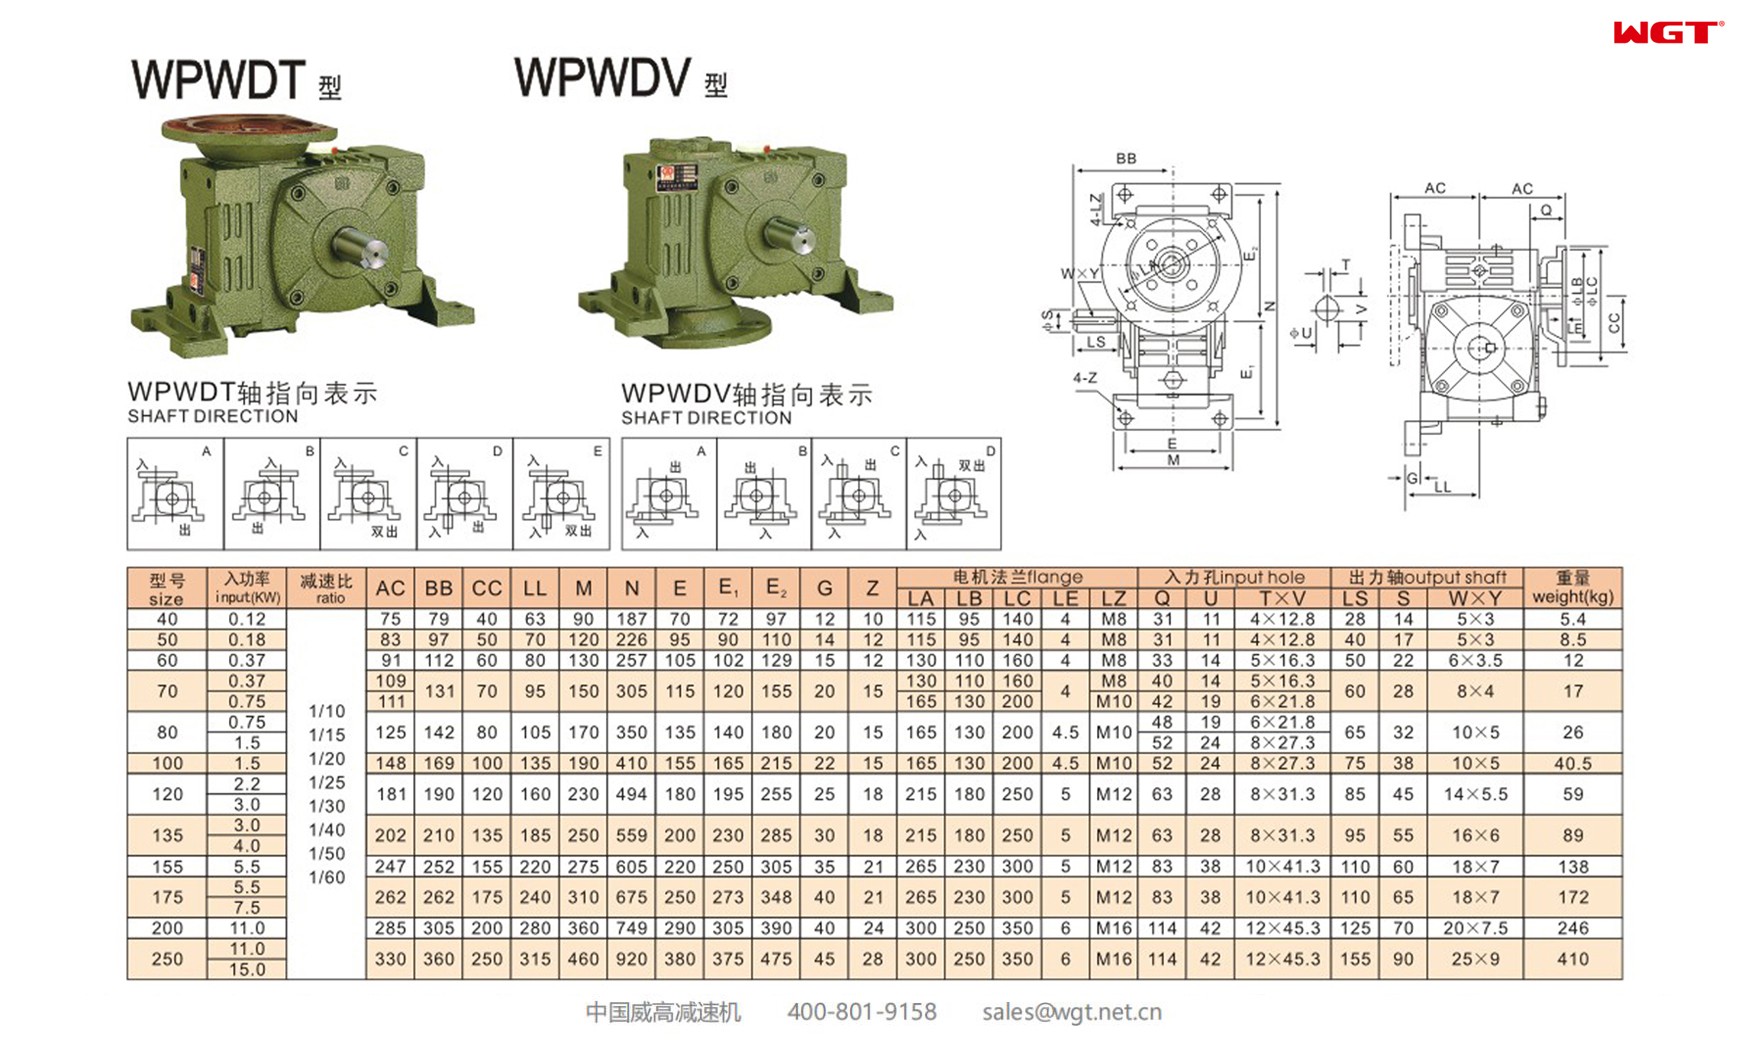 WPWDT40 worm gear reducer universal speed reducer